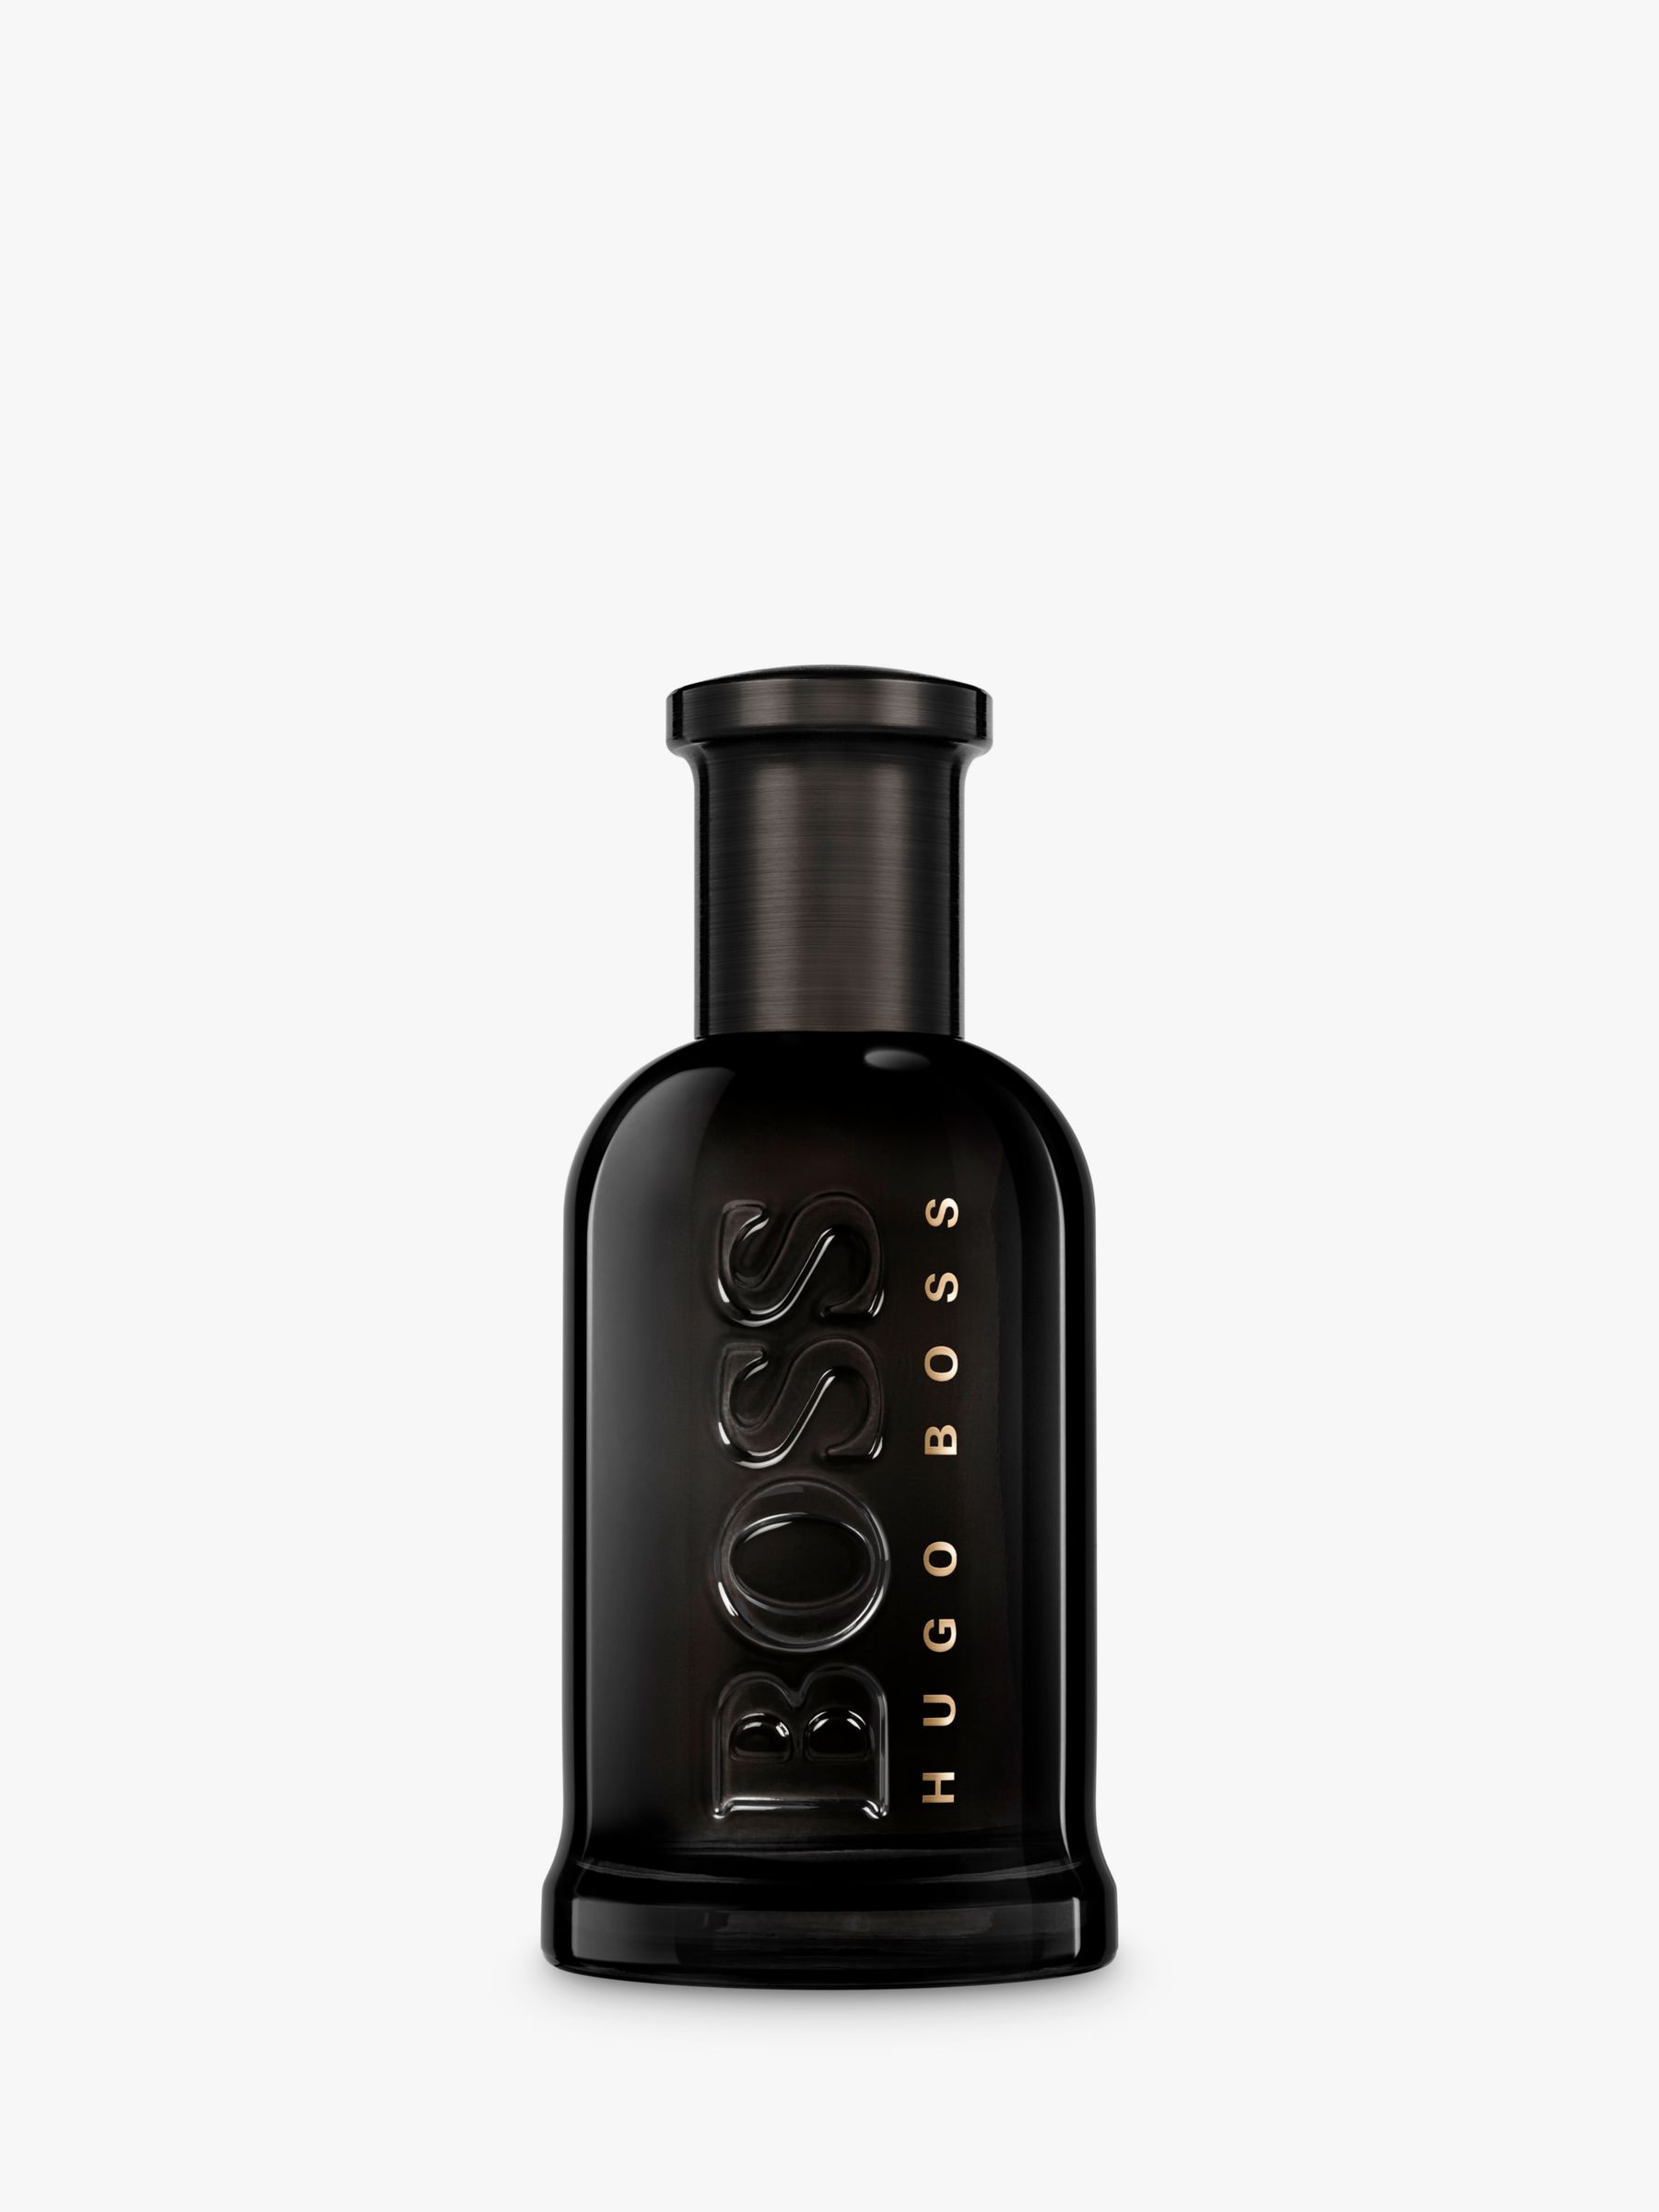 HUGO BOSS BOSS Bottled Parfum, 50ml